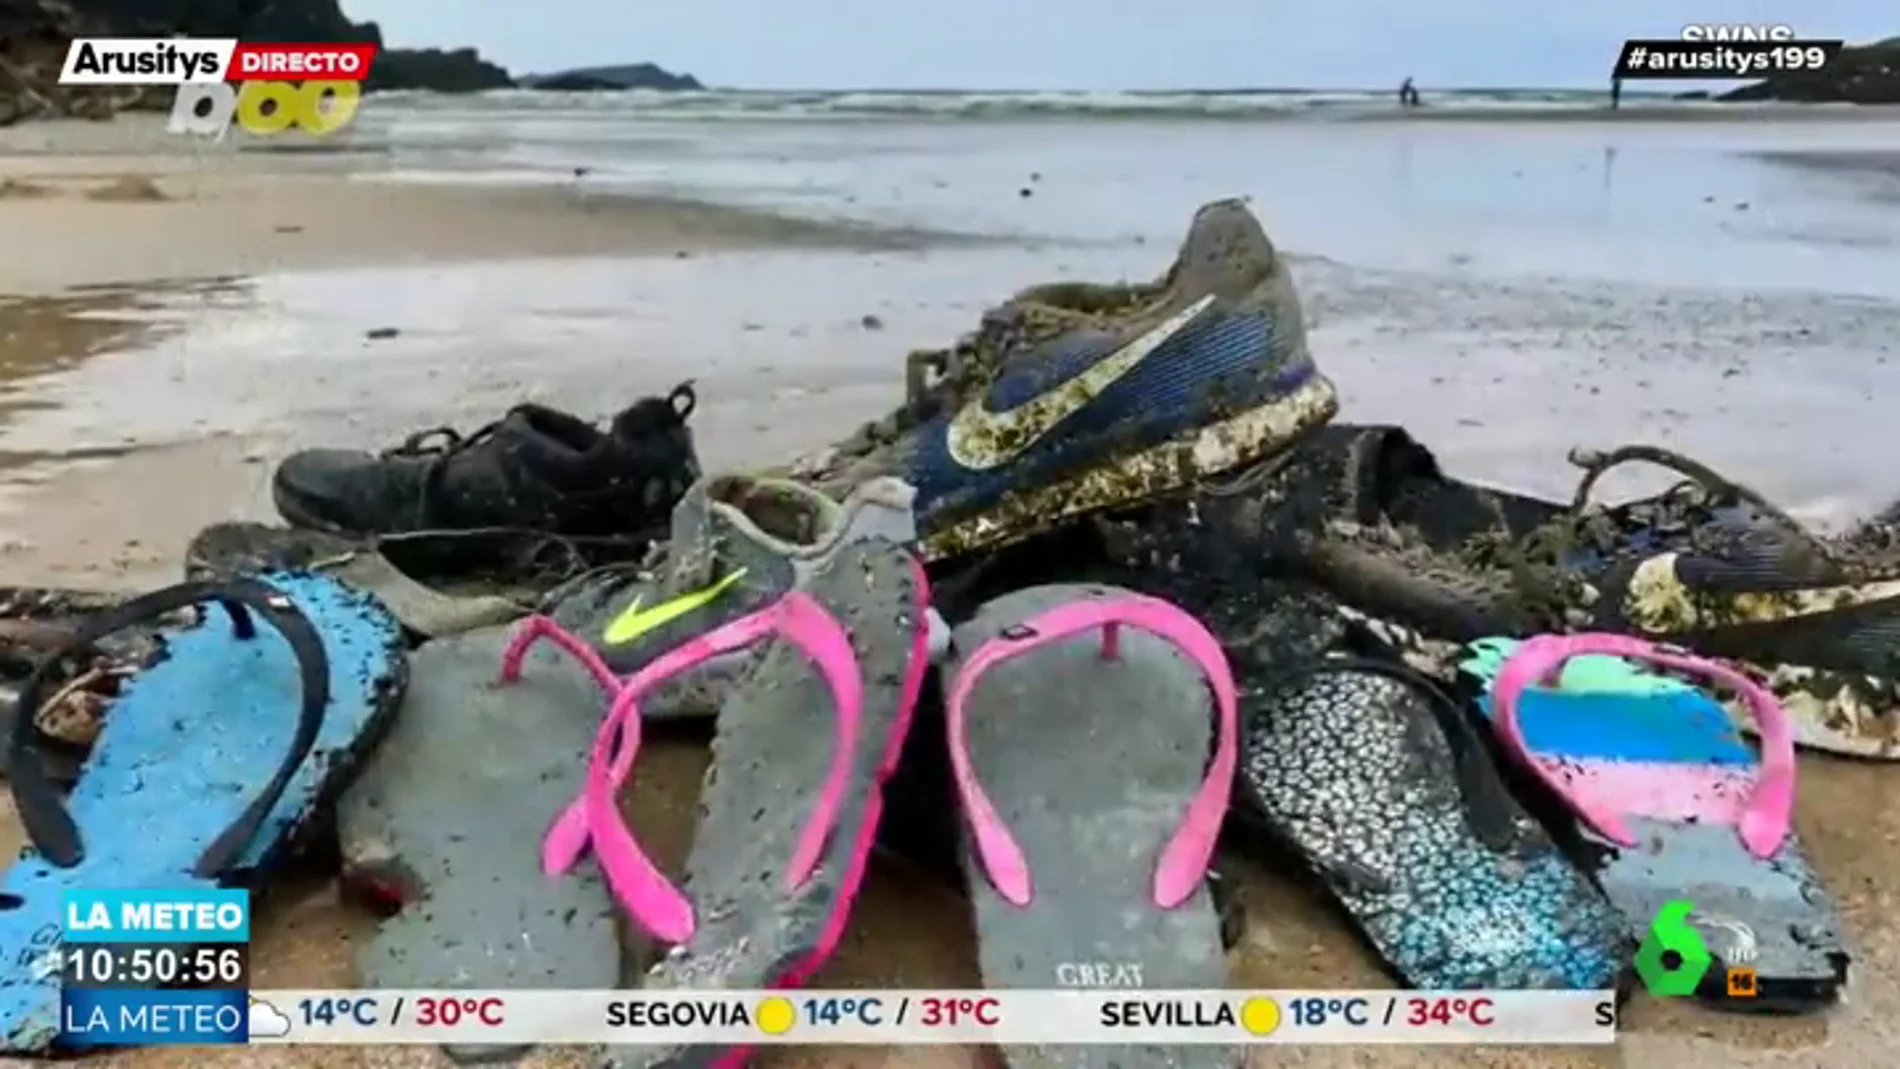 cocaína Dar permiso emparedado Por qué no paran de aparecer cientos de zapatillas Nike en playas de todo  el mundo?